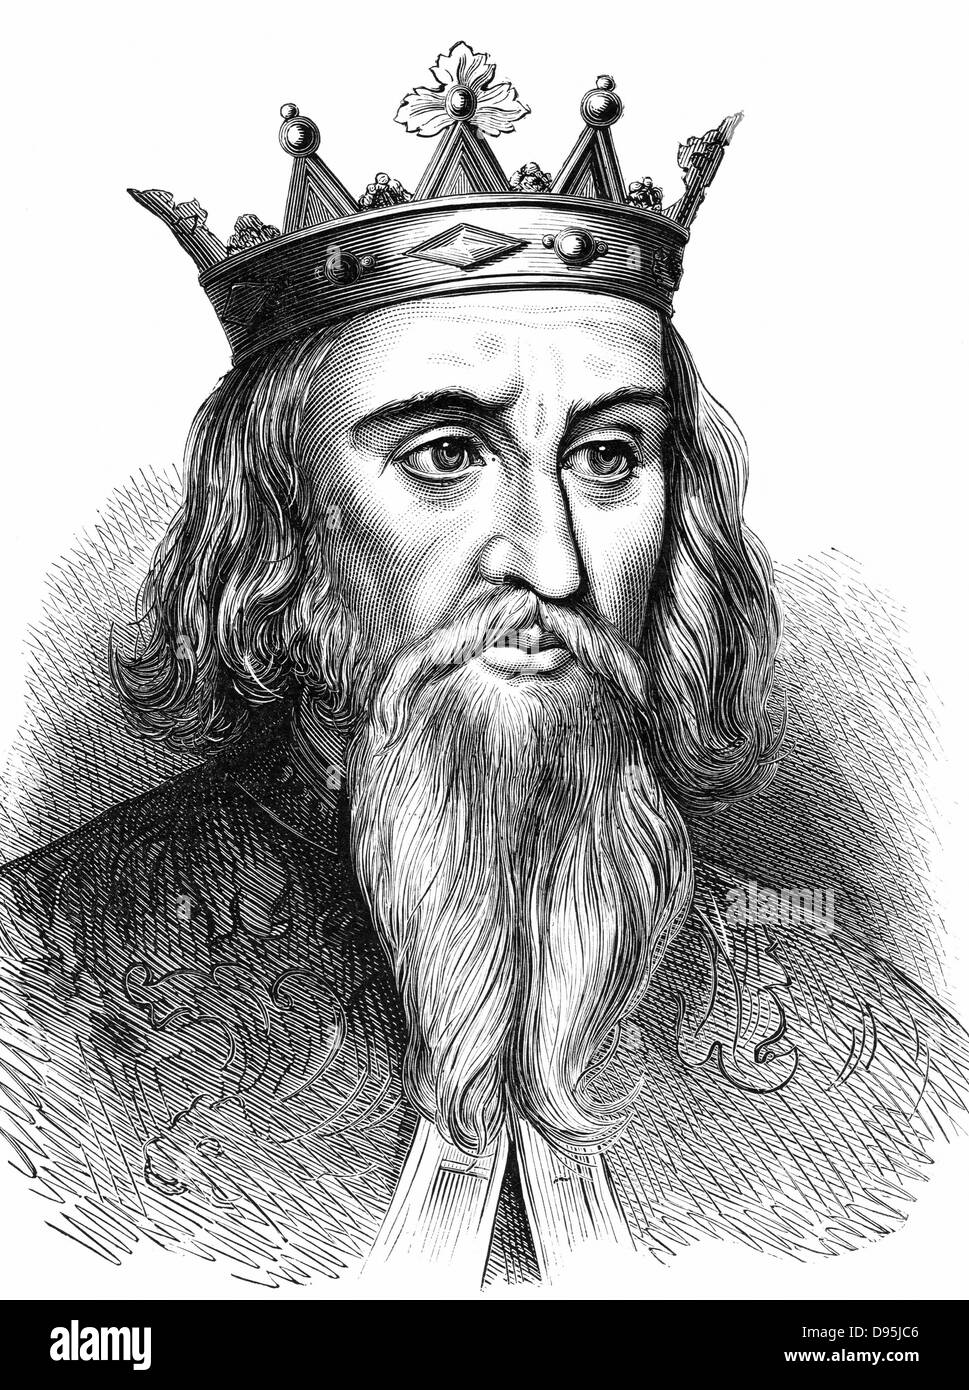 Enrico I (1068-1135), re d'Inghilterra dal 1100; più giovane figlio di Guglielmo il Conquistatore. Incisione su legno c1900 Foto Stock